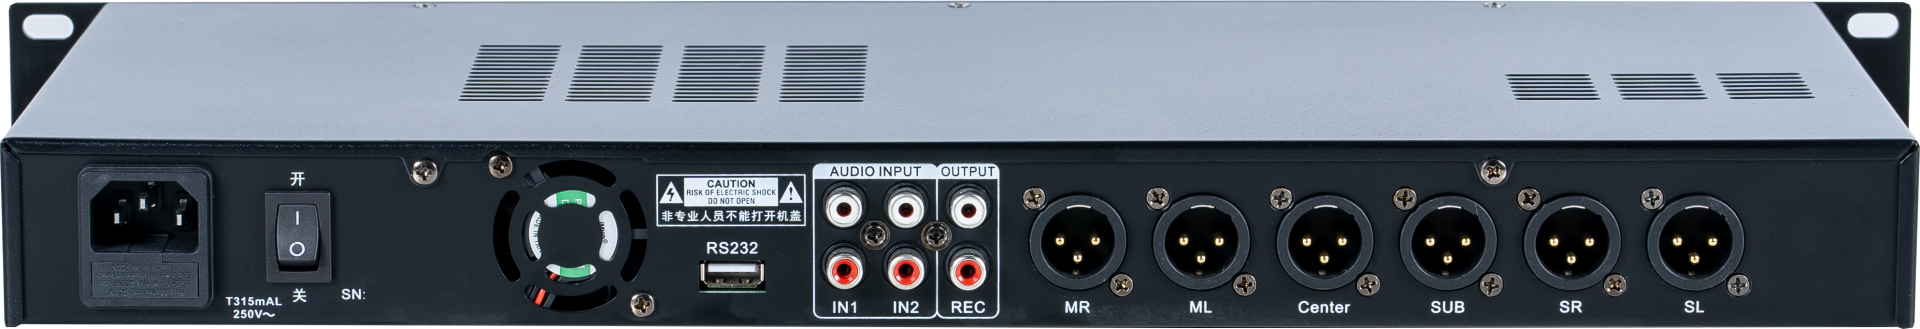 Q1 Entertainment Audio System Processor